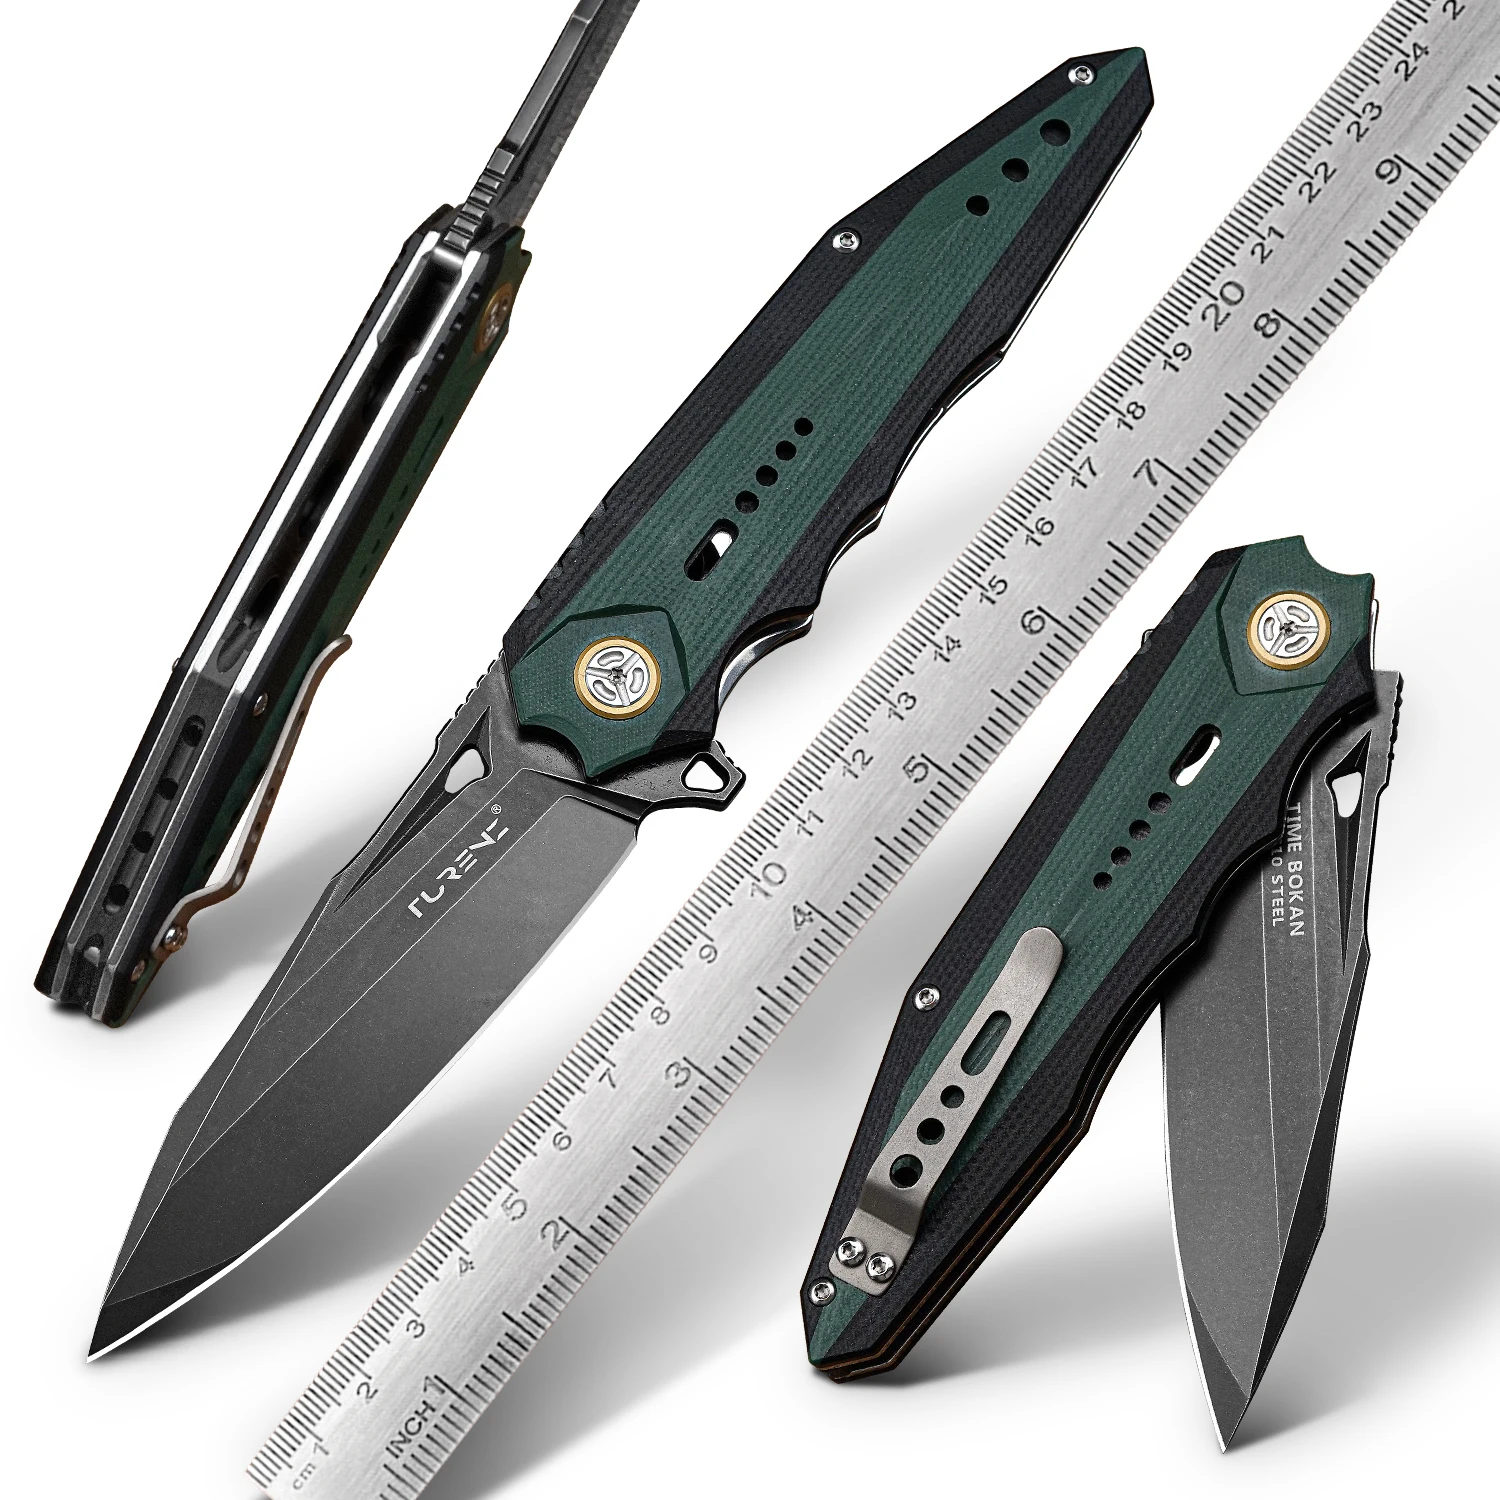 newootz-vg10-складной-нож-g10-рукоятка-edc-тактический-нож-для-самообороны-кемпинга-активного-отдыха-с-карманным-зажимом